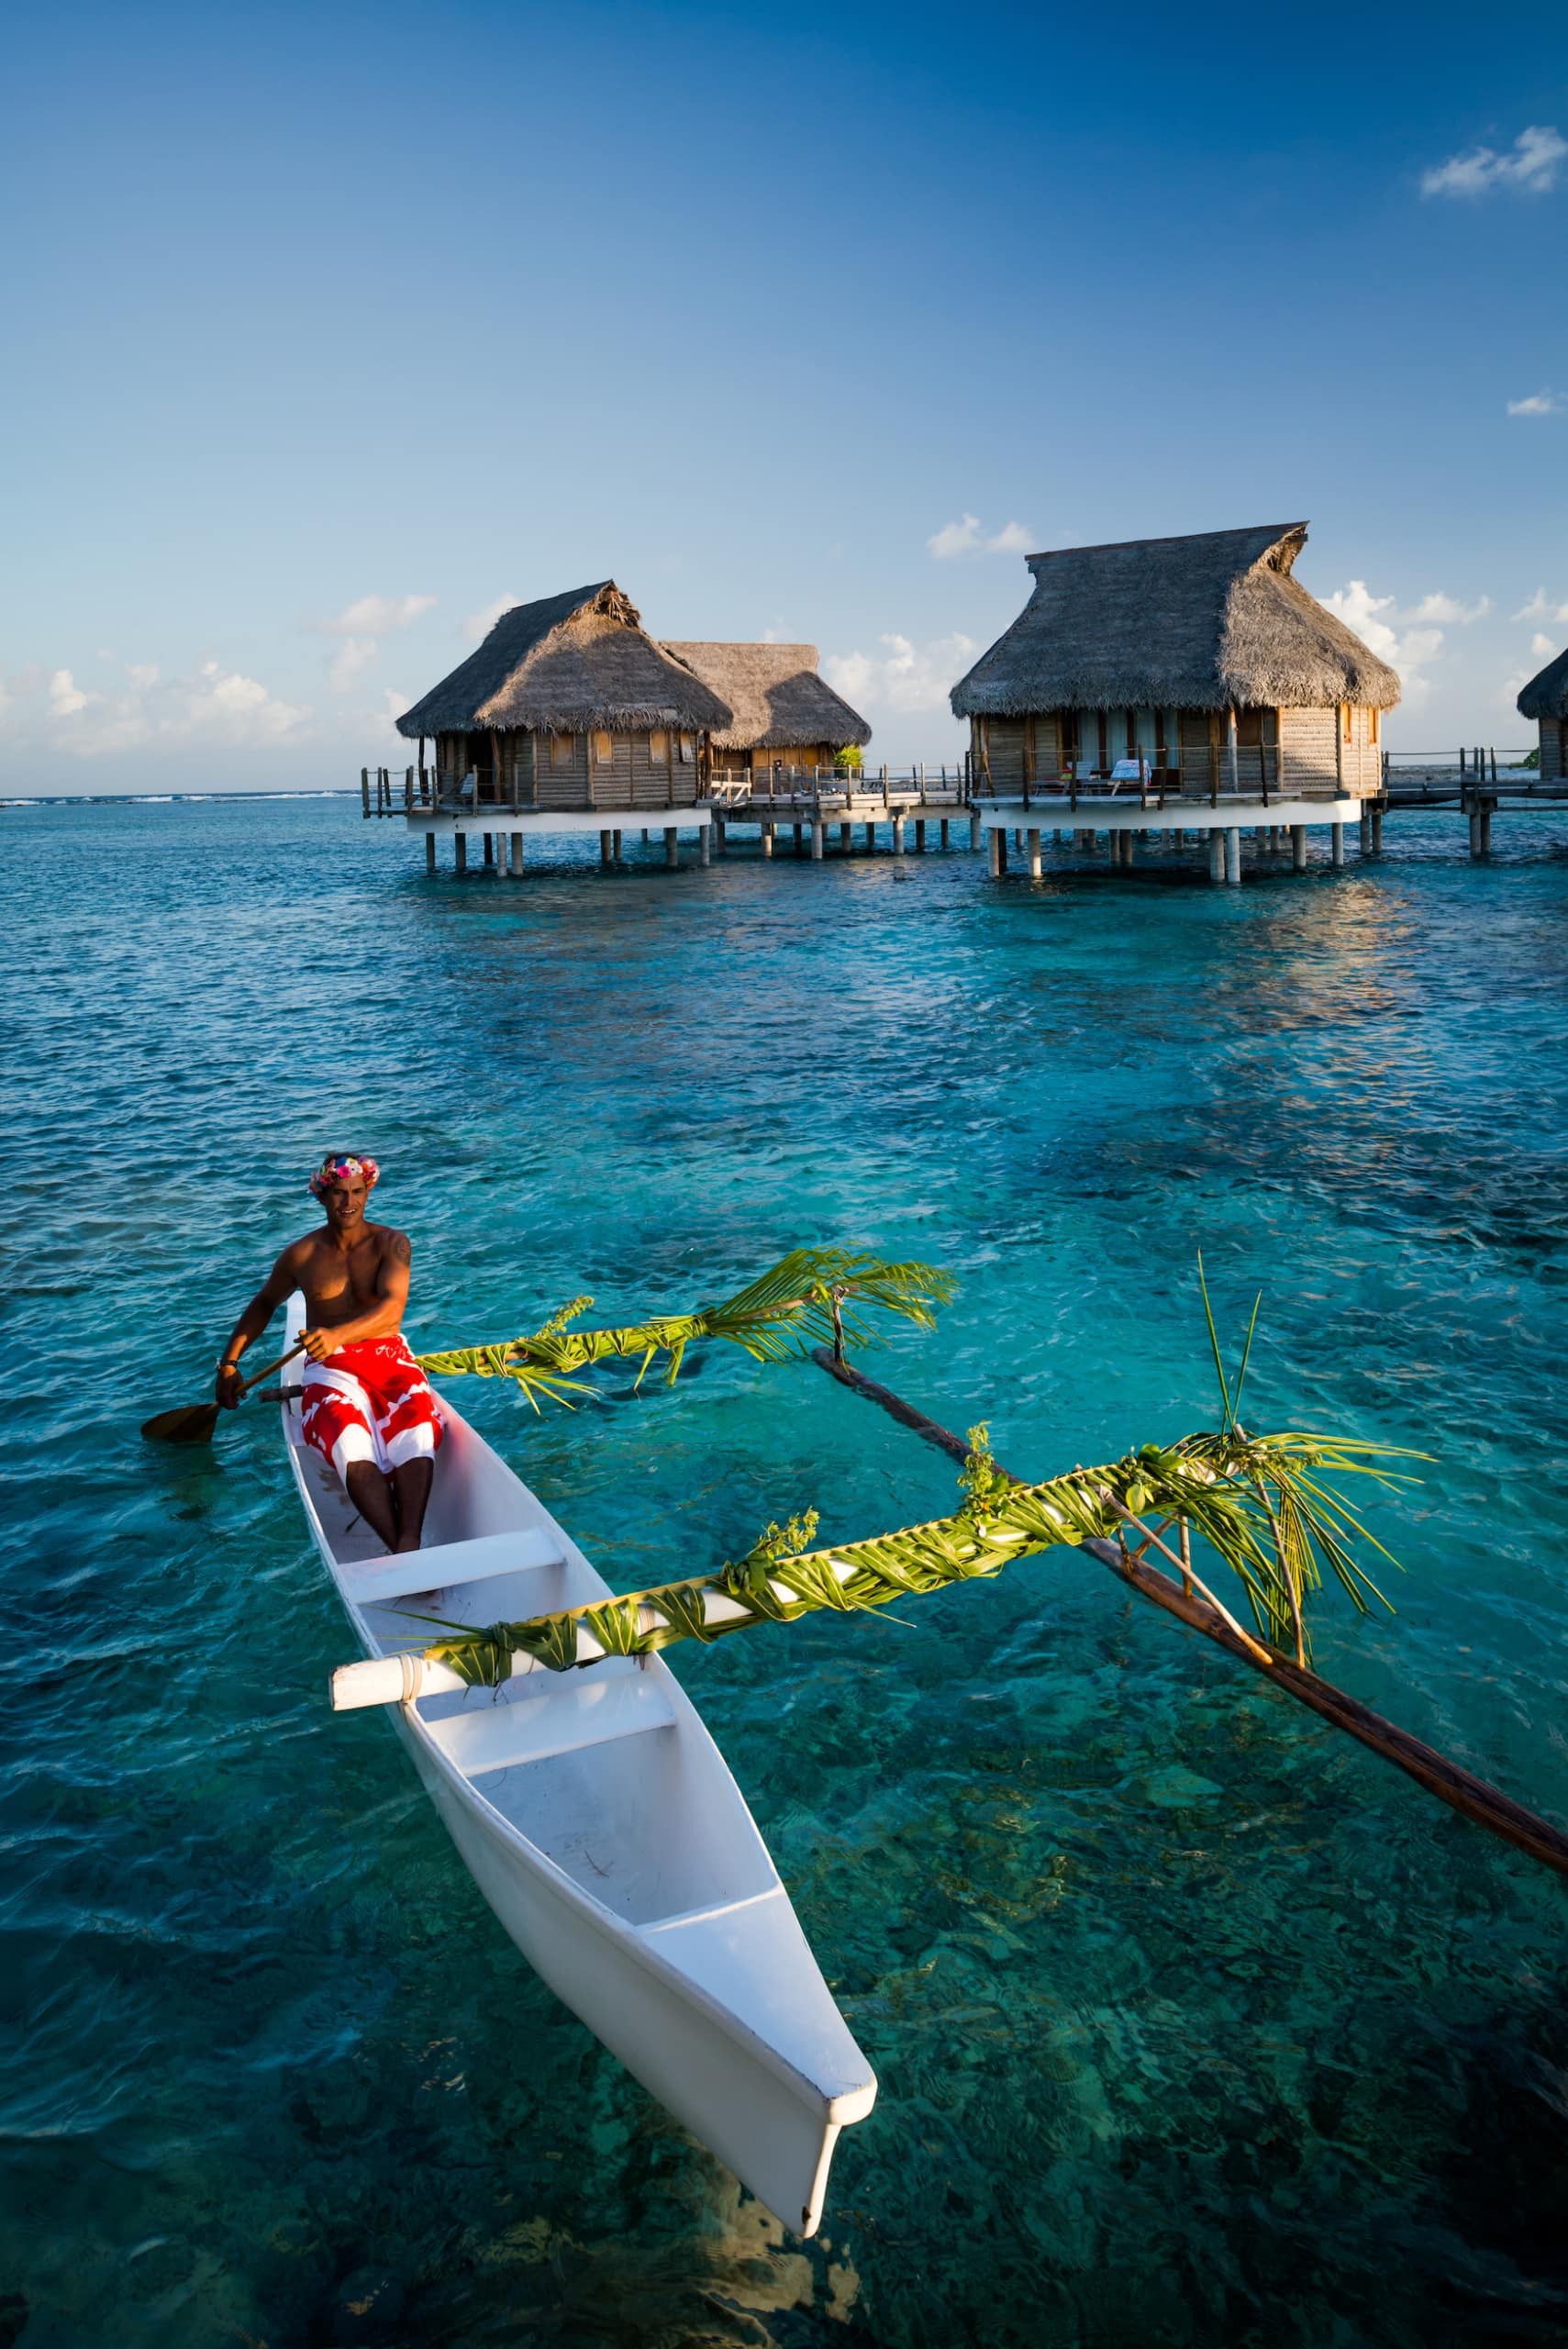 Polynesier paddelt auf Boot vor Überwasser-Bungalows in der Südsee